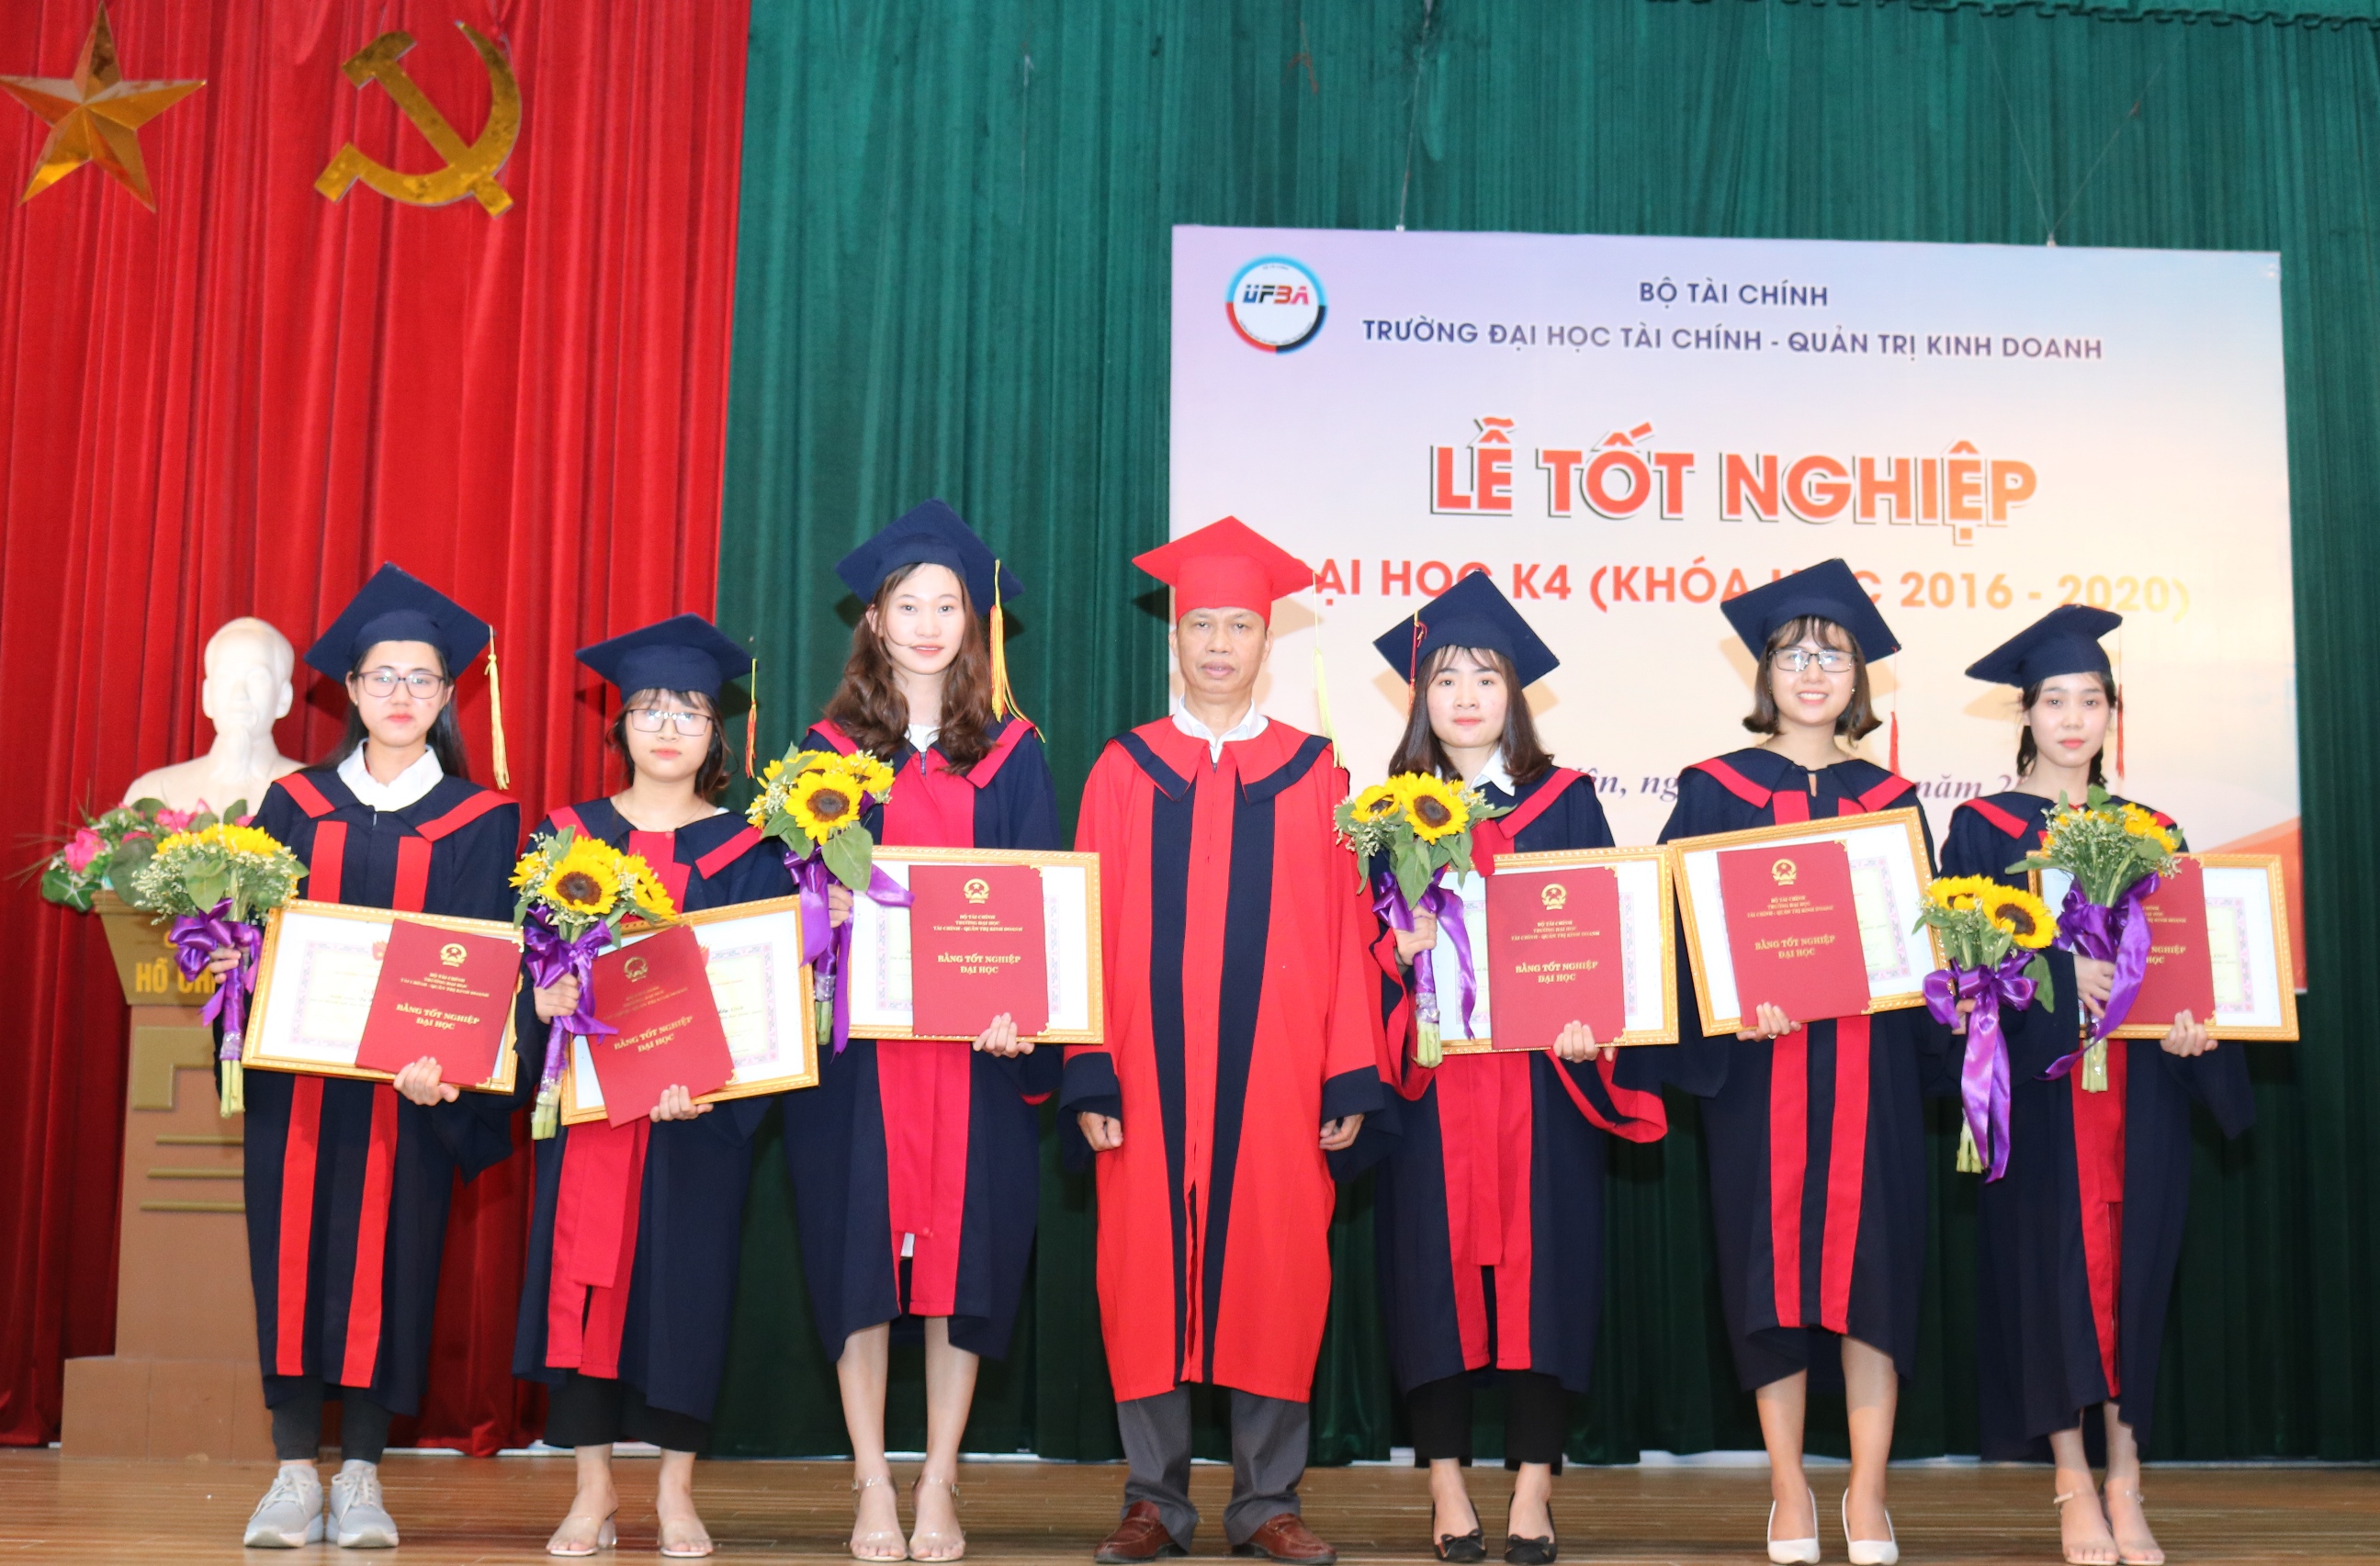 Lễ Bế giảng và trao bằng tốt nghiệp Đại học K4 (Khóa học 2016 - 2020)